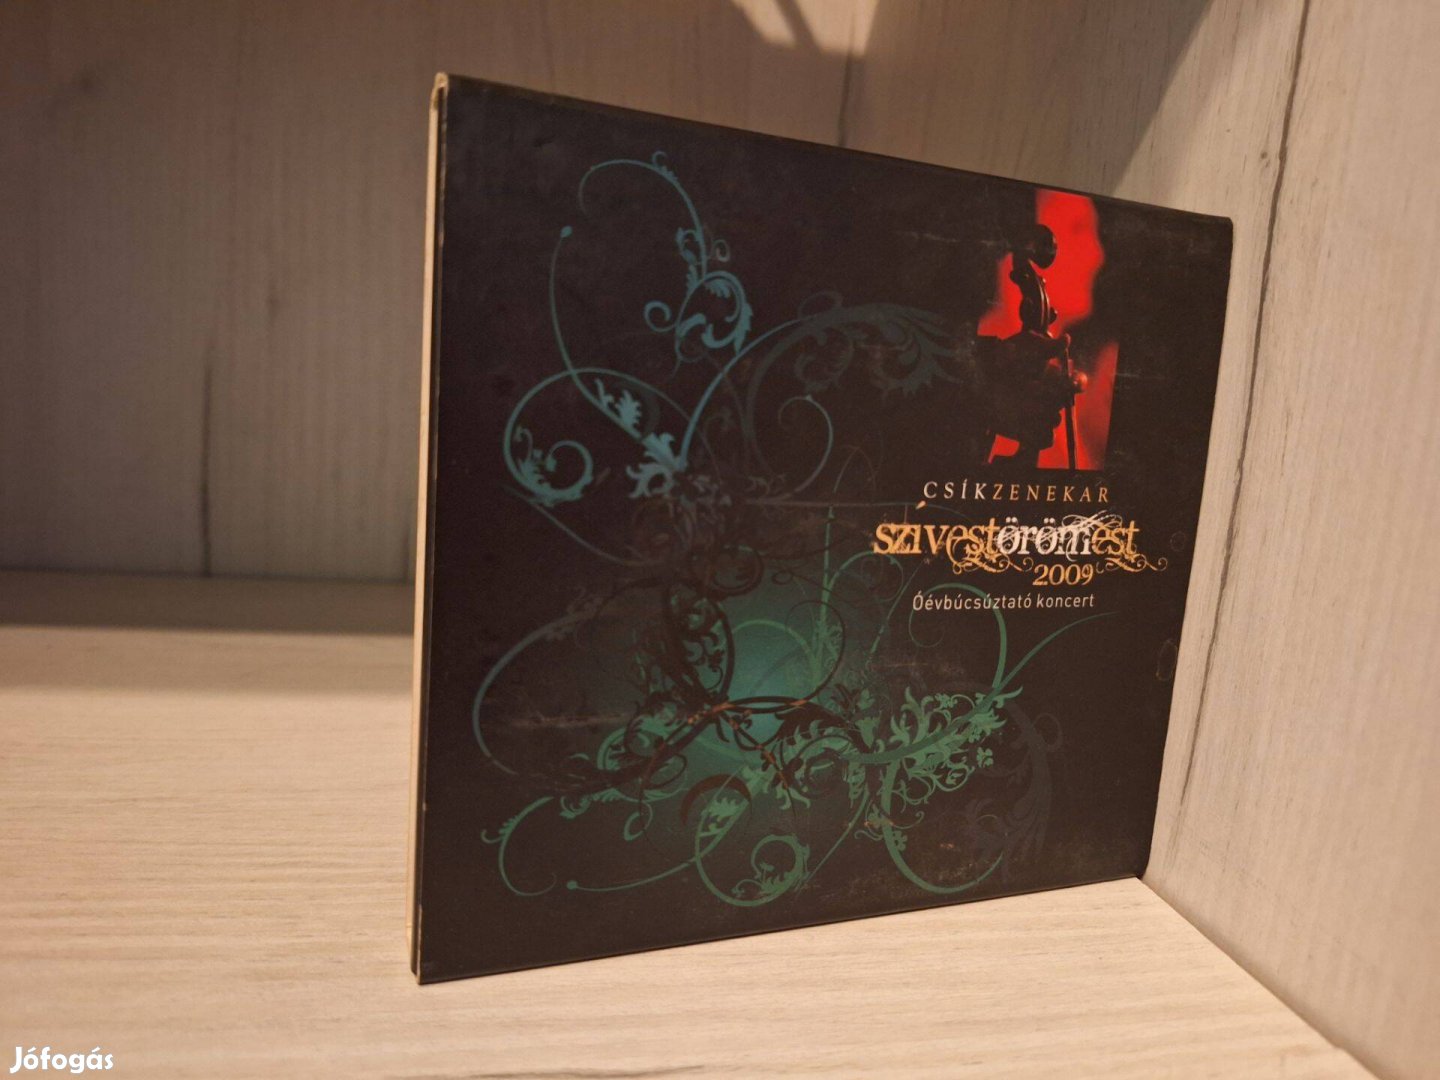 Csík Zenekar - Szívestörömest 2009 - Óévbúcsúztató Koncert CD + DVD